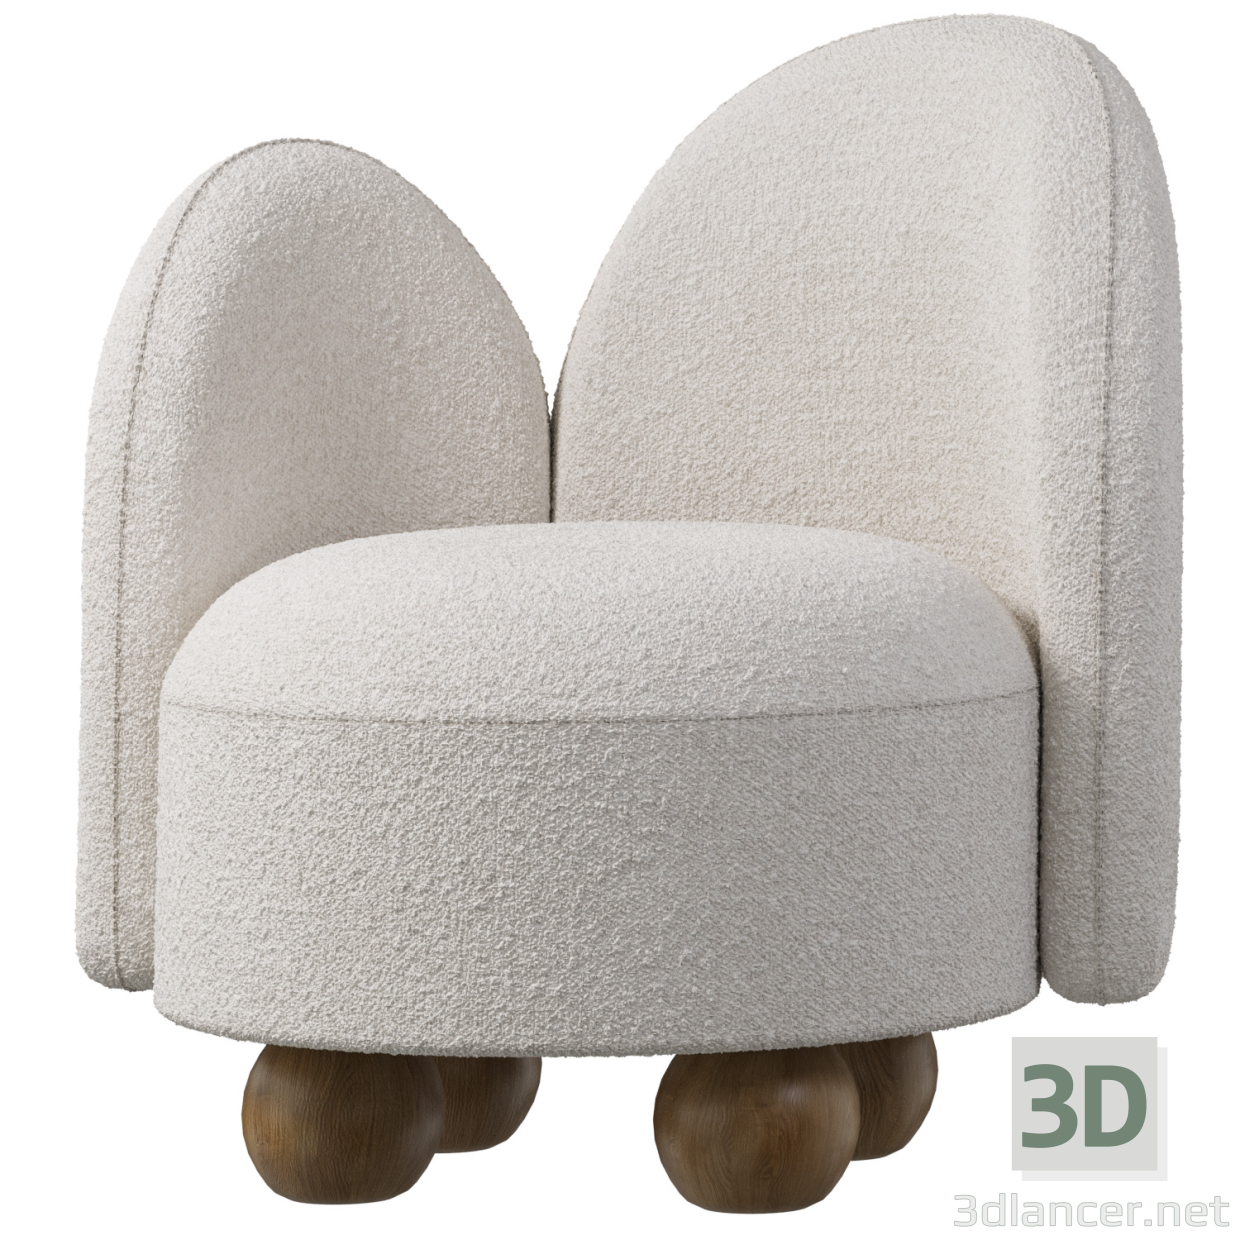 3d Living room armchair White Wooden Balls model buy - render